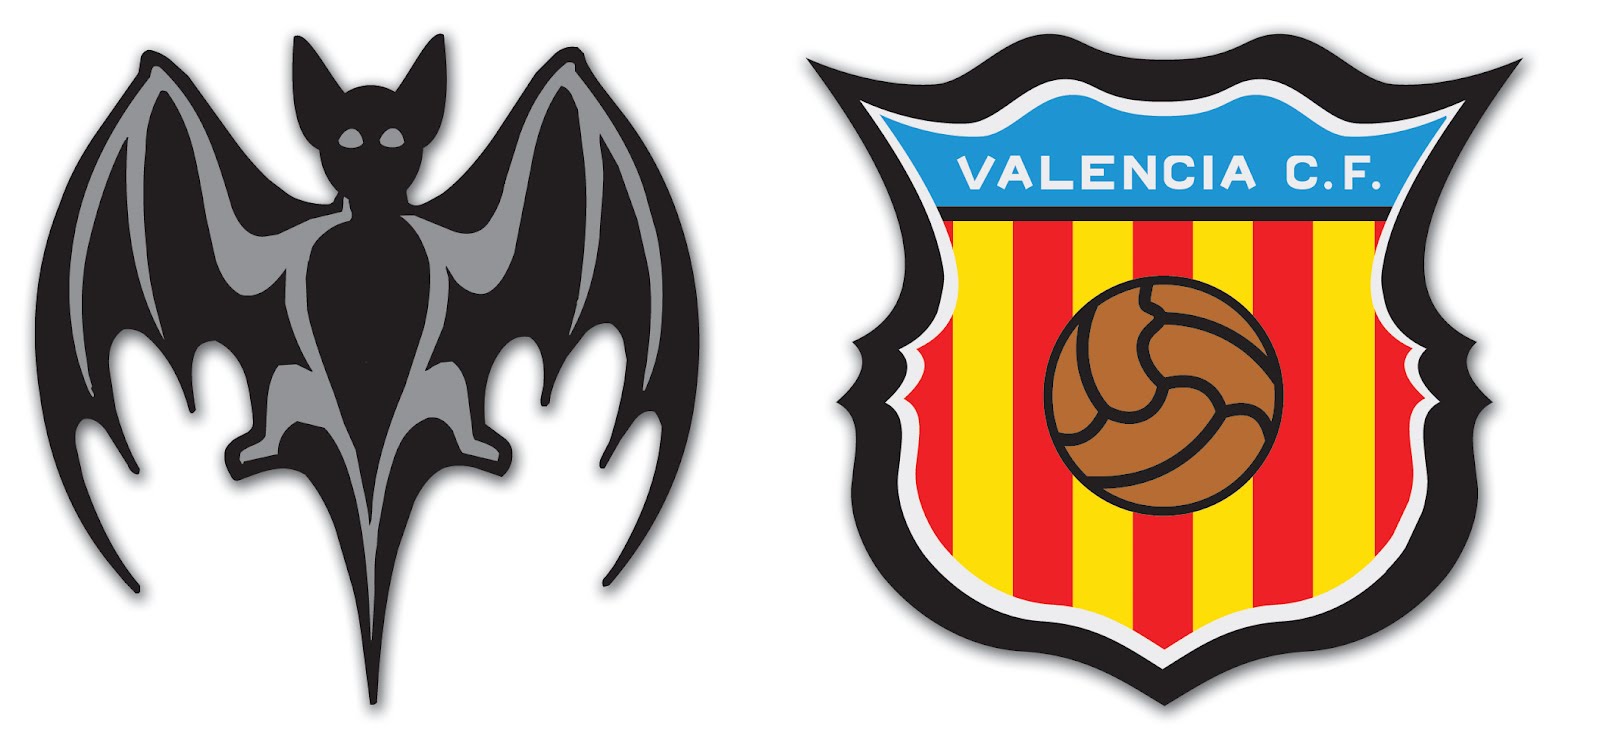 Valencia Logos